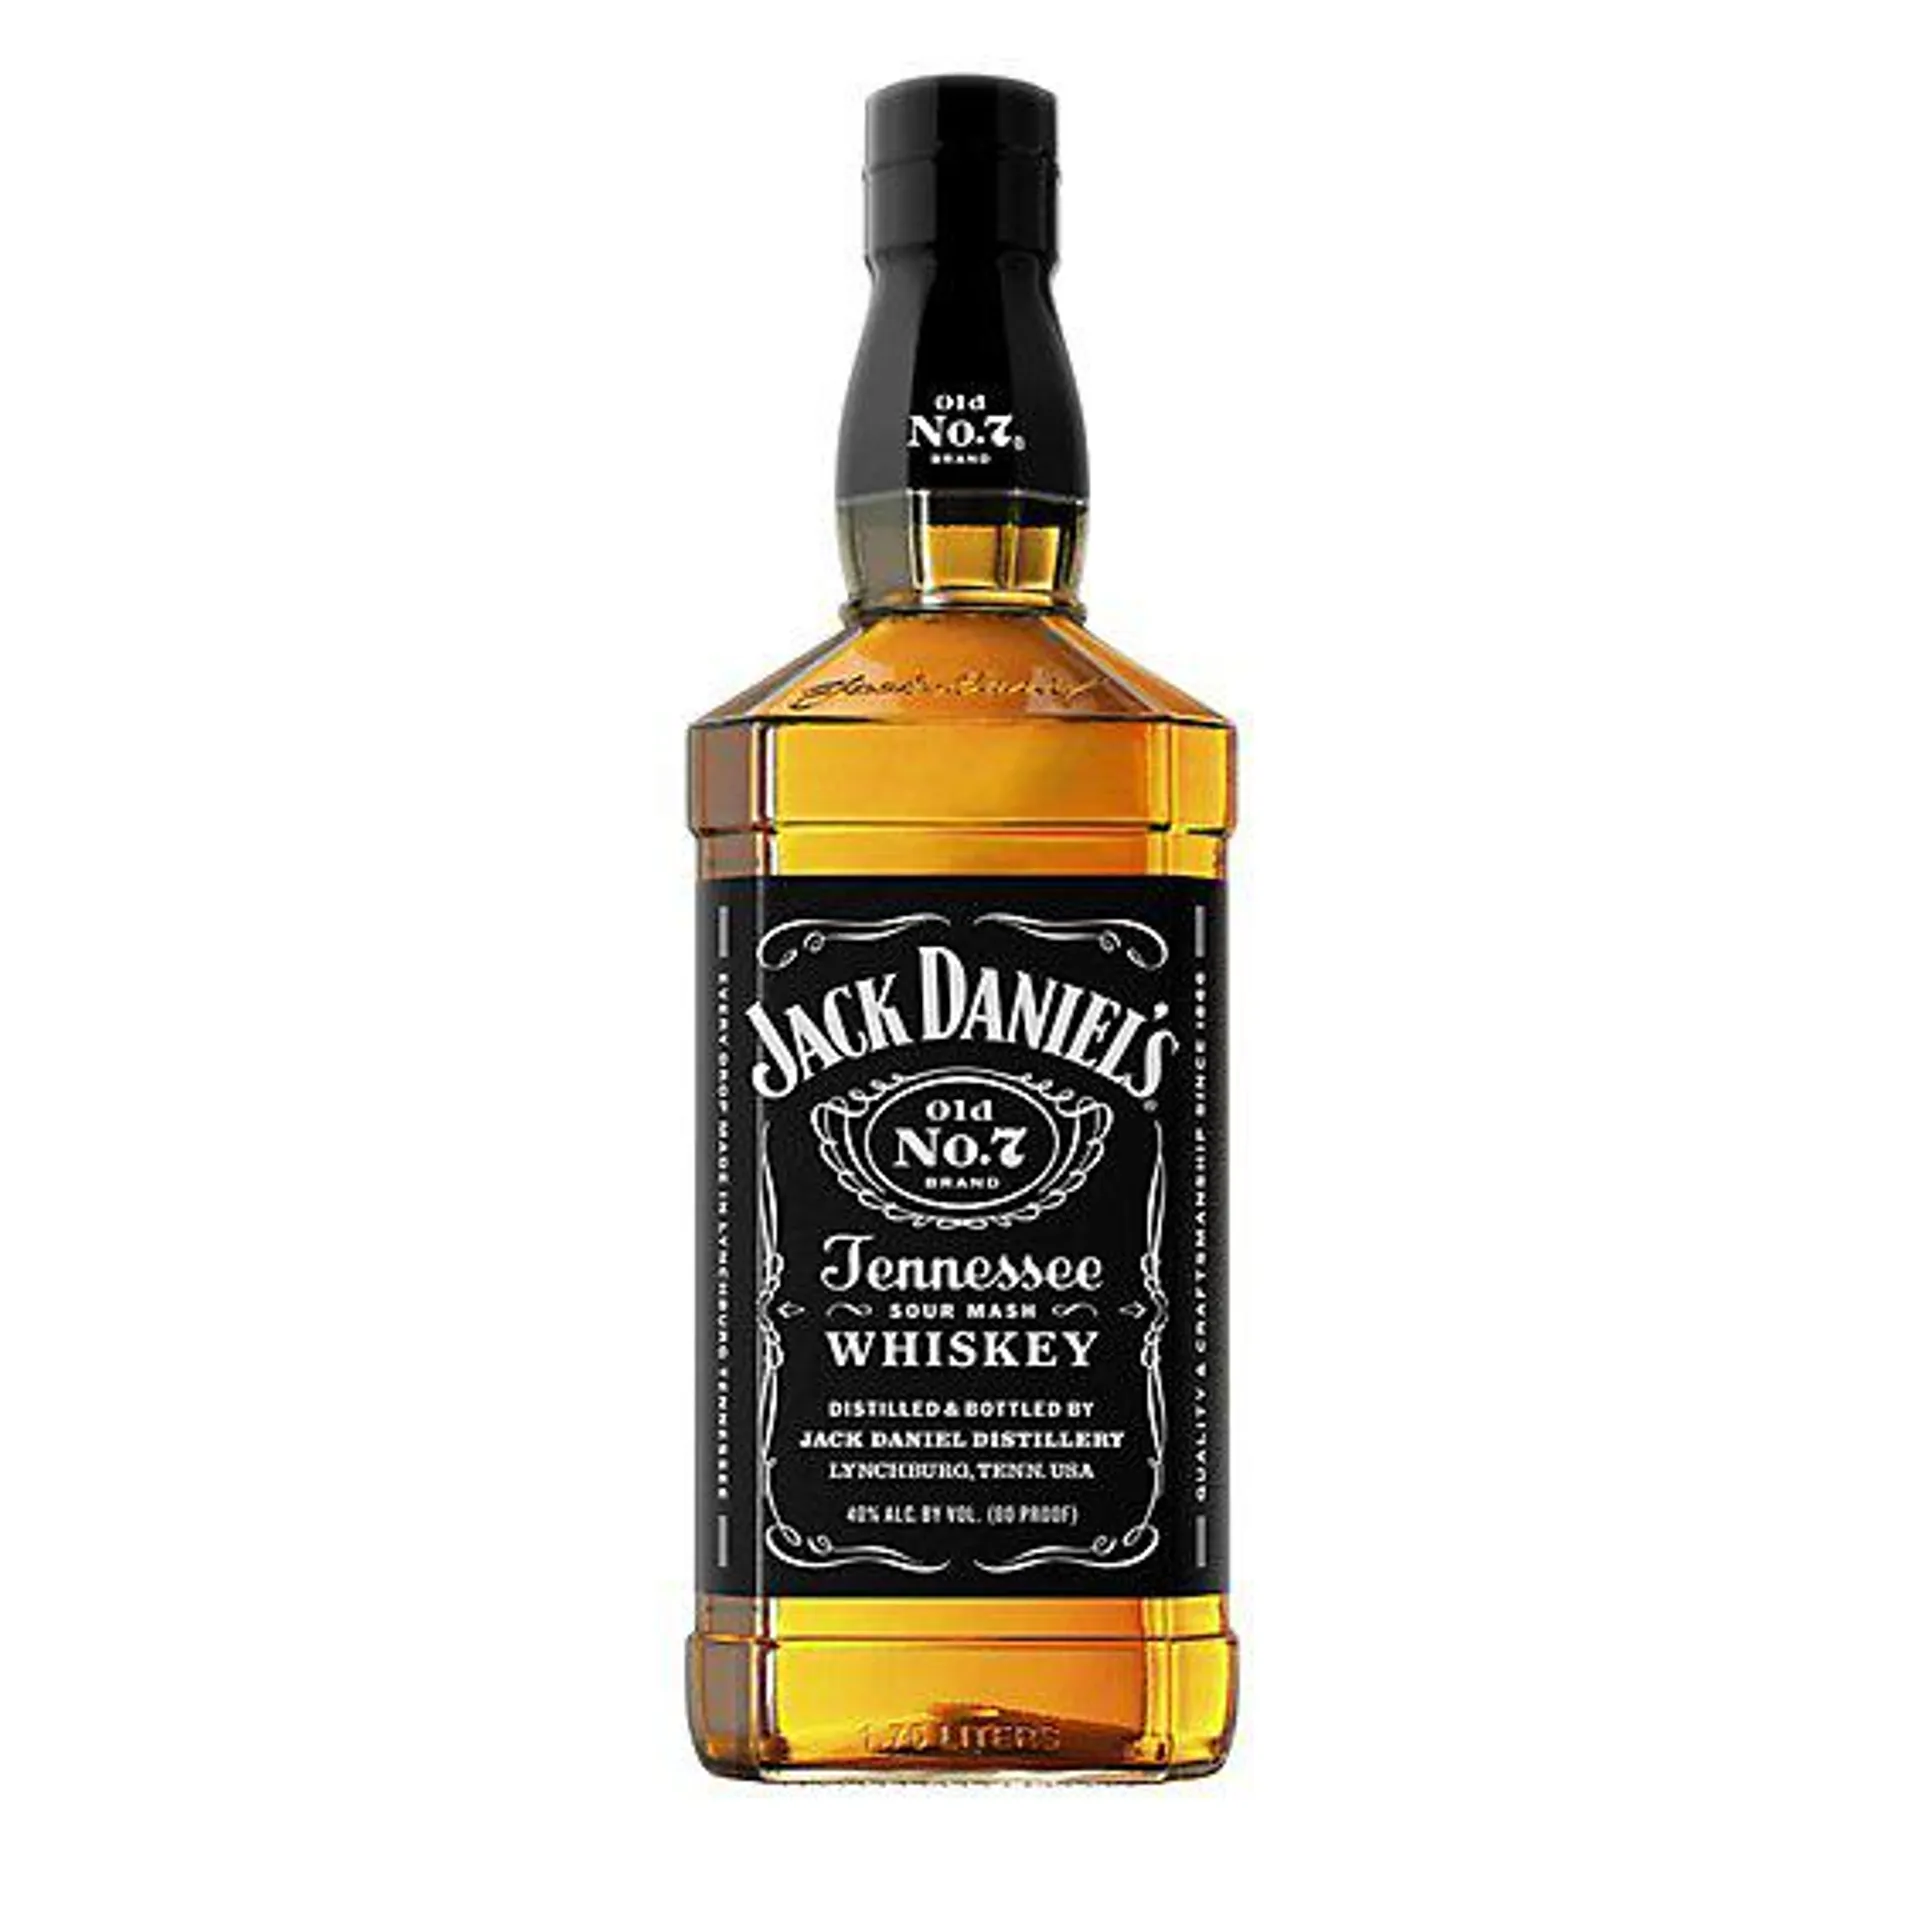 Jack Daniel's Old No. 7 Tennes... Bottle - 1.75 Liter